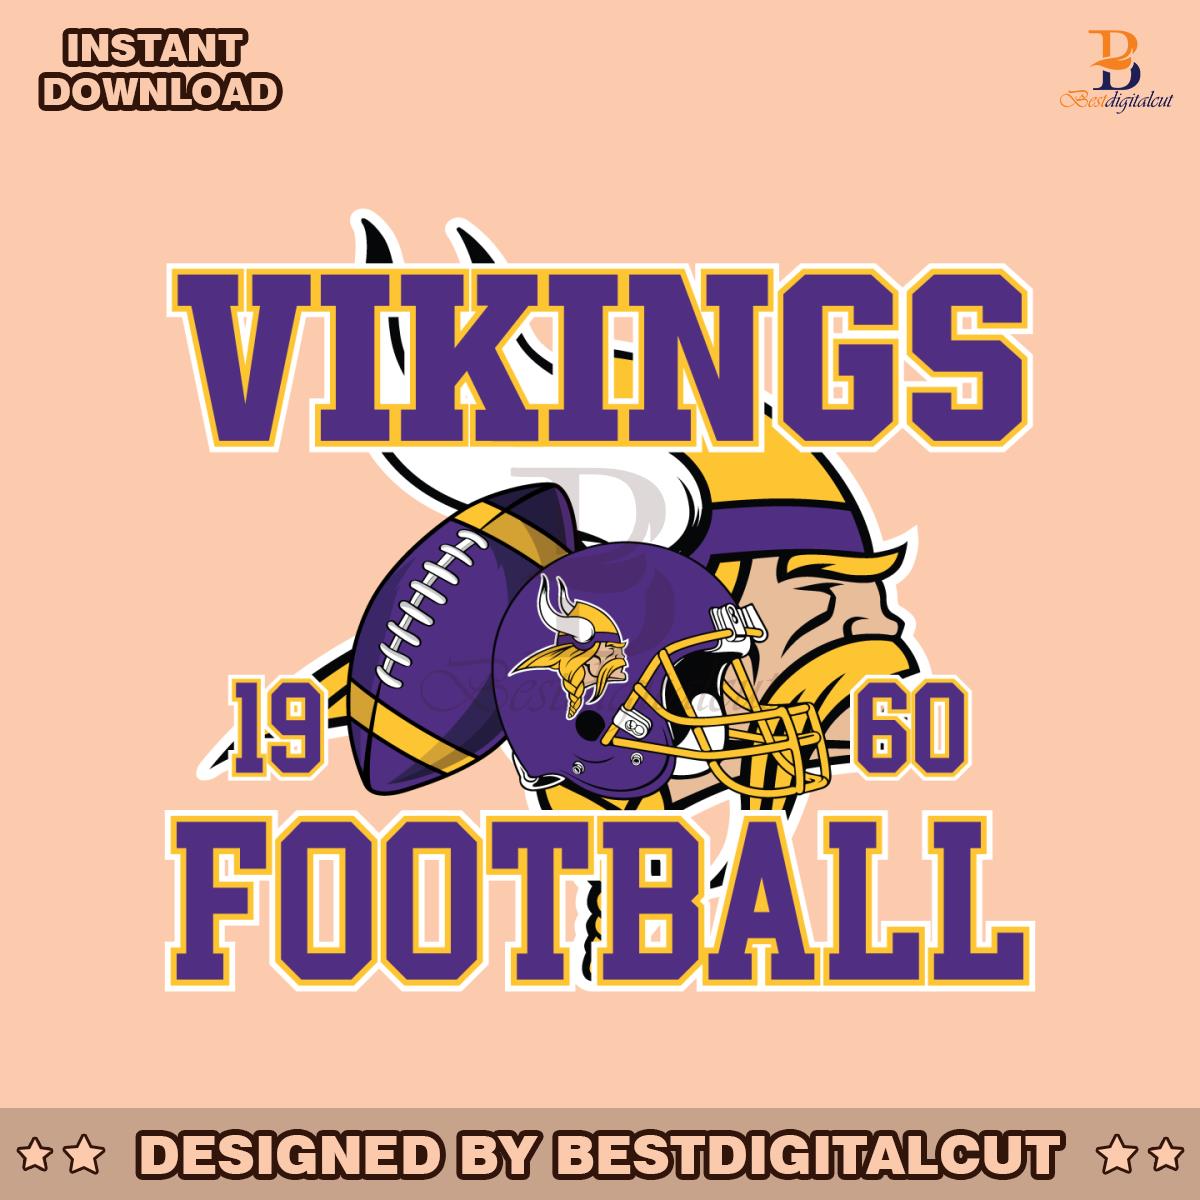 vintage-vikings-football-helmet-svg-digital-download